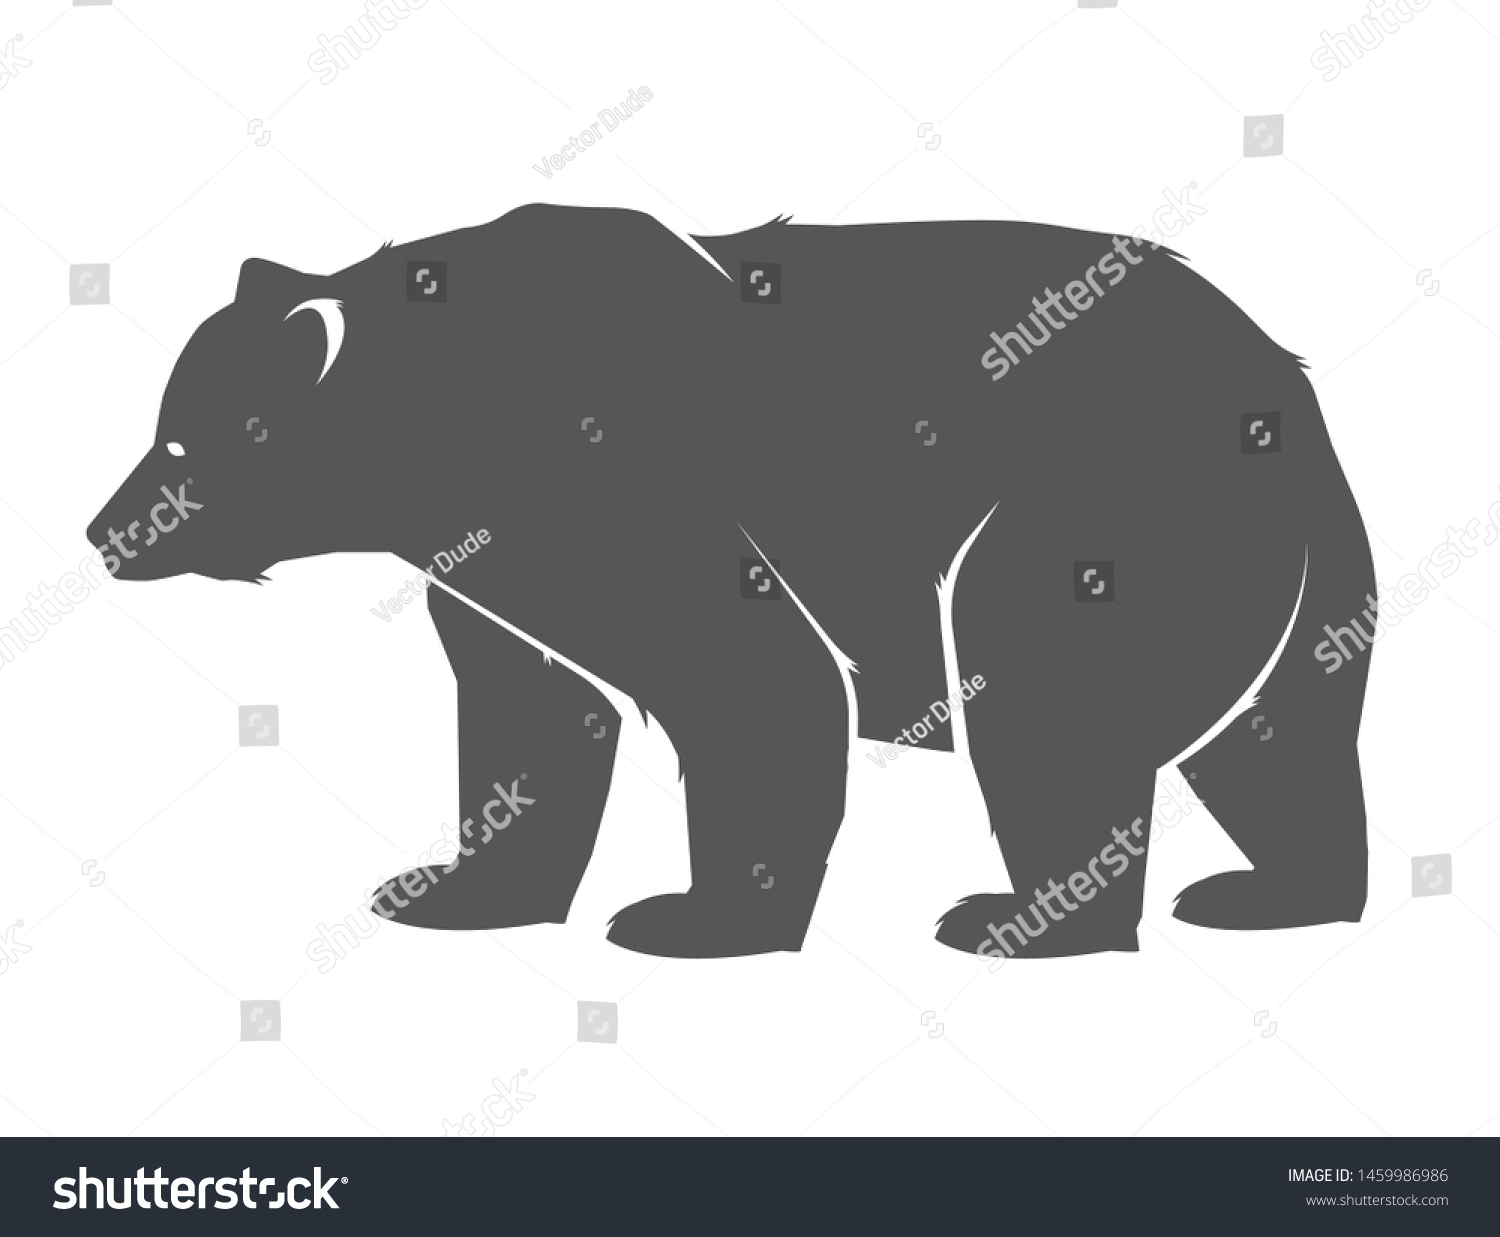 熊のアイコン デザイン用のベクター画像コンセプトイラスト 熊のアイコンシルエット 横顔に立つ熊のイラトス のベクター画像素材 ロイヤリティフリー